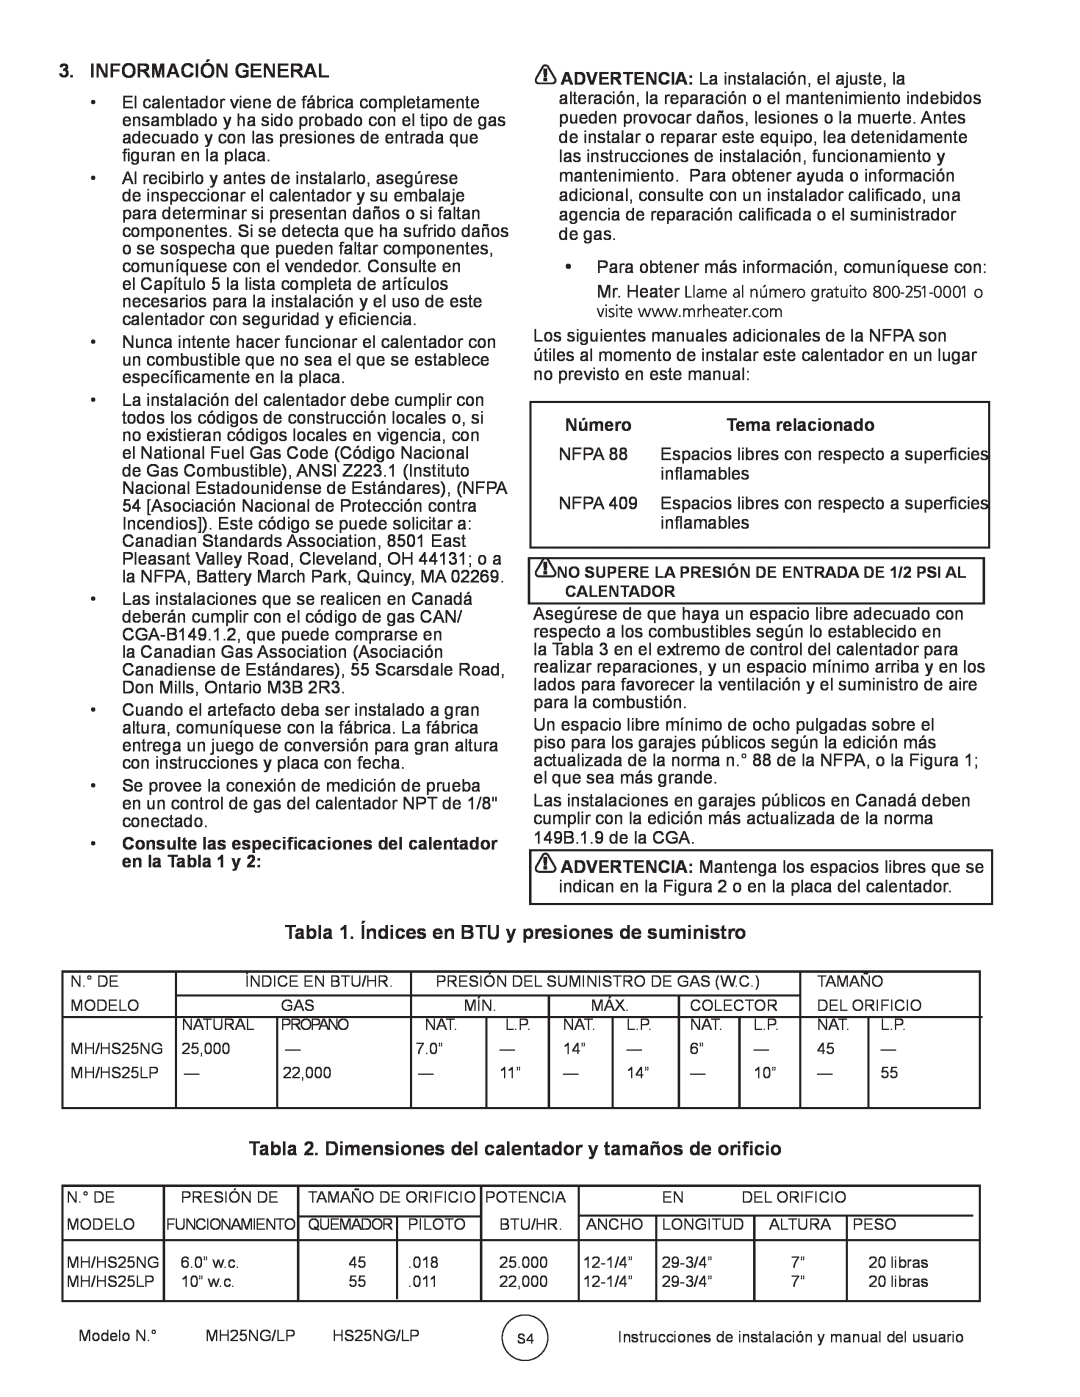 Mr. Heater MH25NG/LP Información General, Tabla 1. Índices en BTU y presiones de suministro, Número, Tema relacionado 